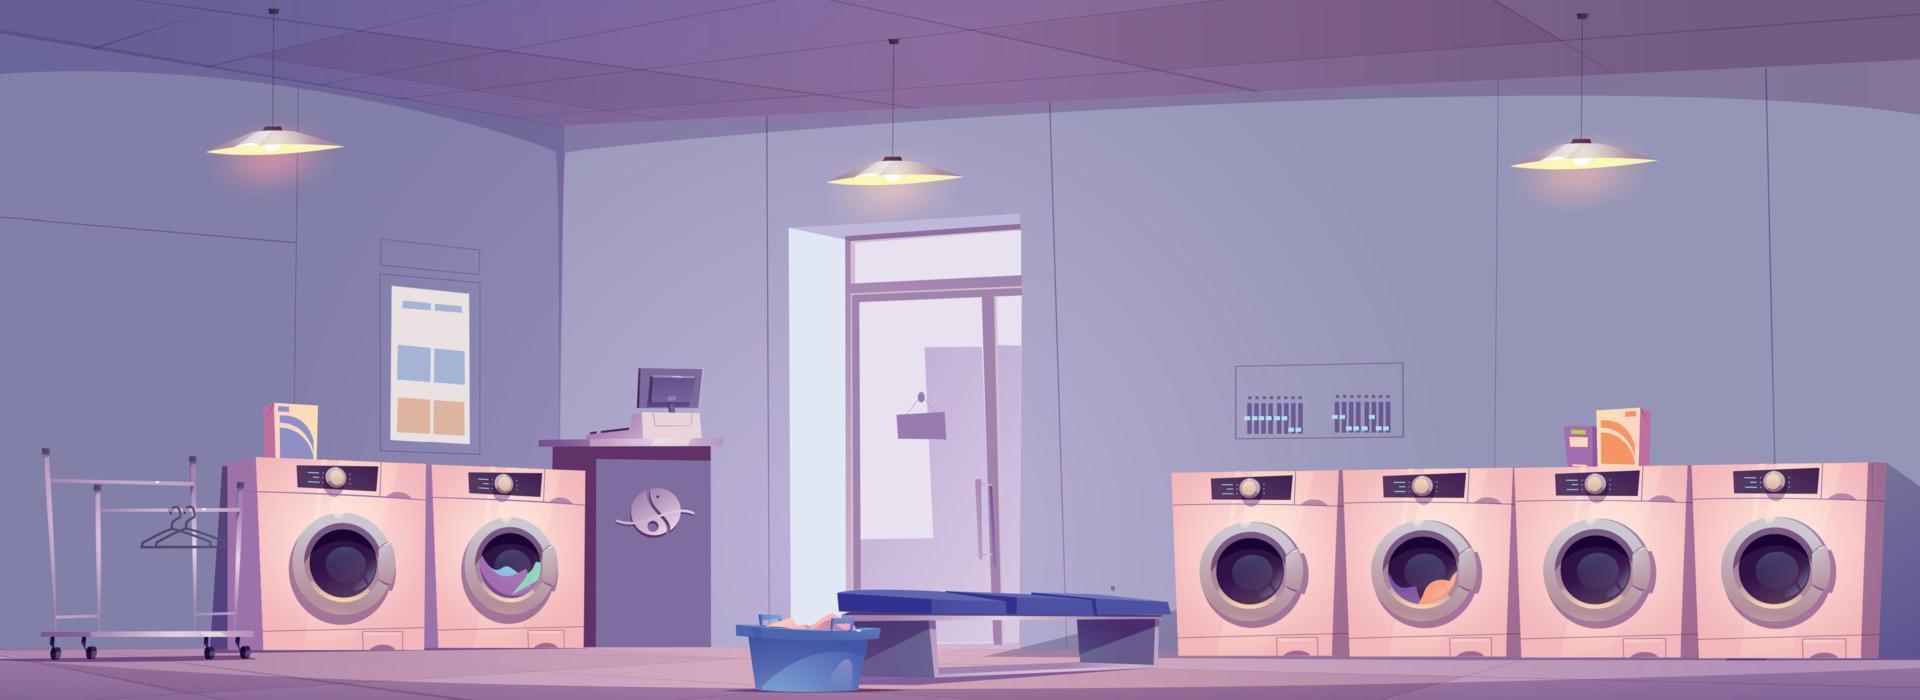 Öffentlichkeit Wäsche Zimmer Innere Design vektor